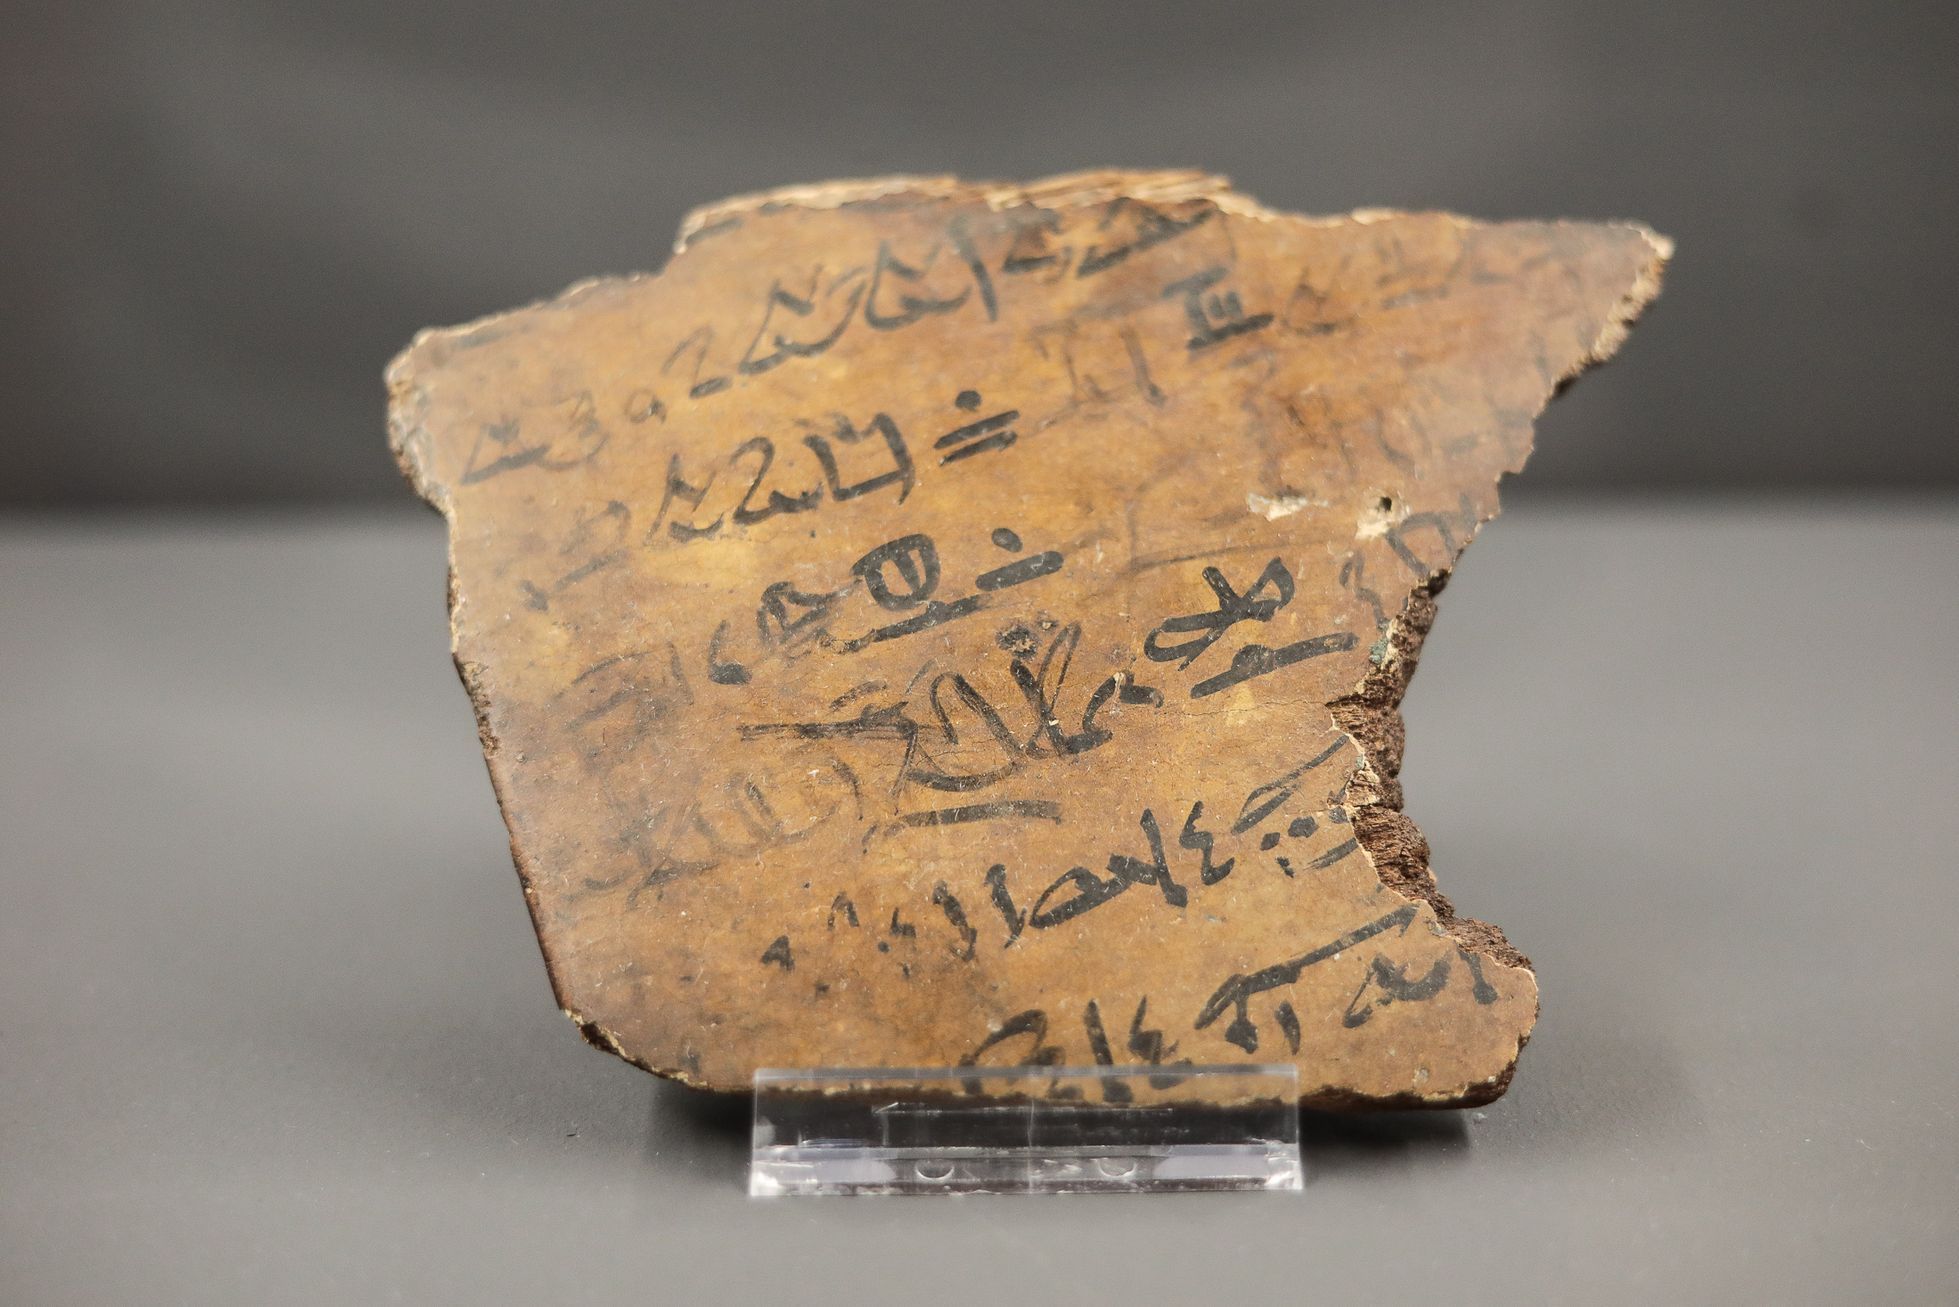 Výstava Tutanchamon RealExperience, Národní Muzeum